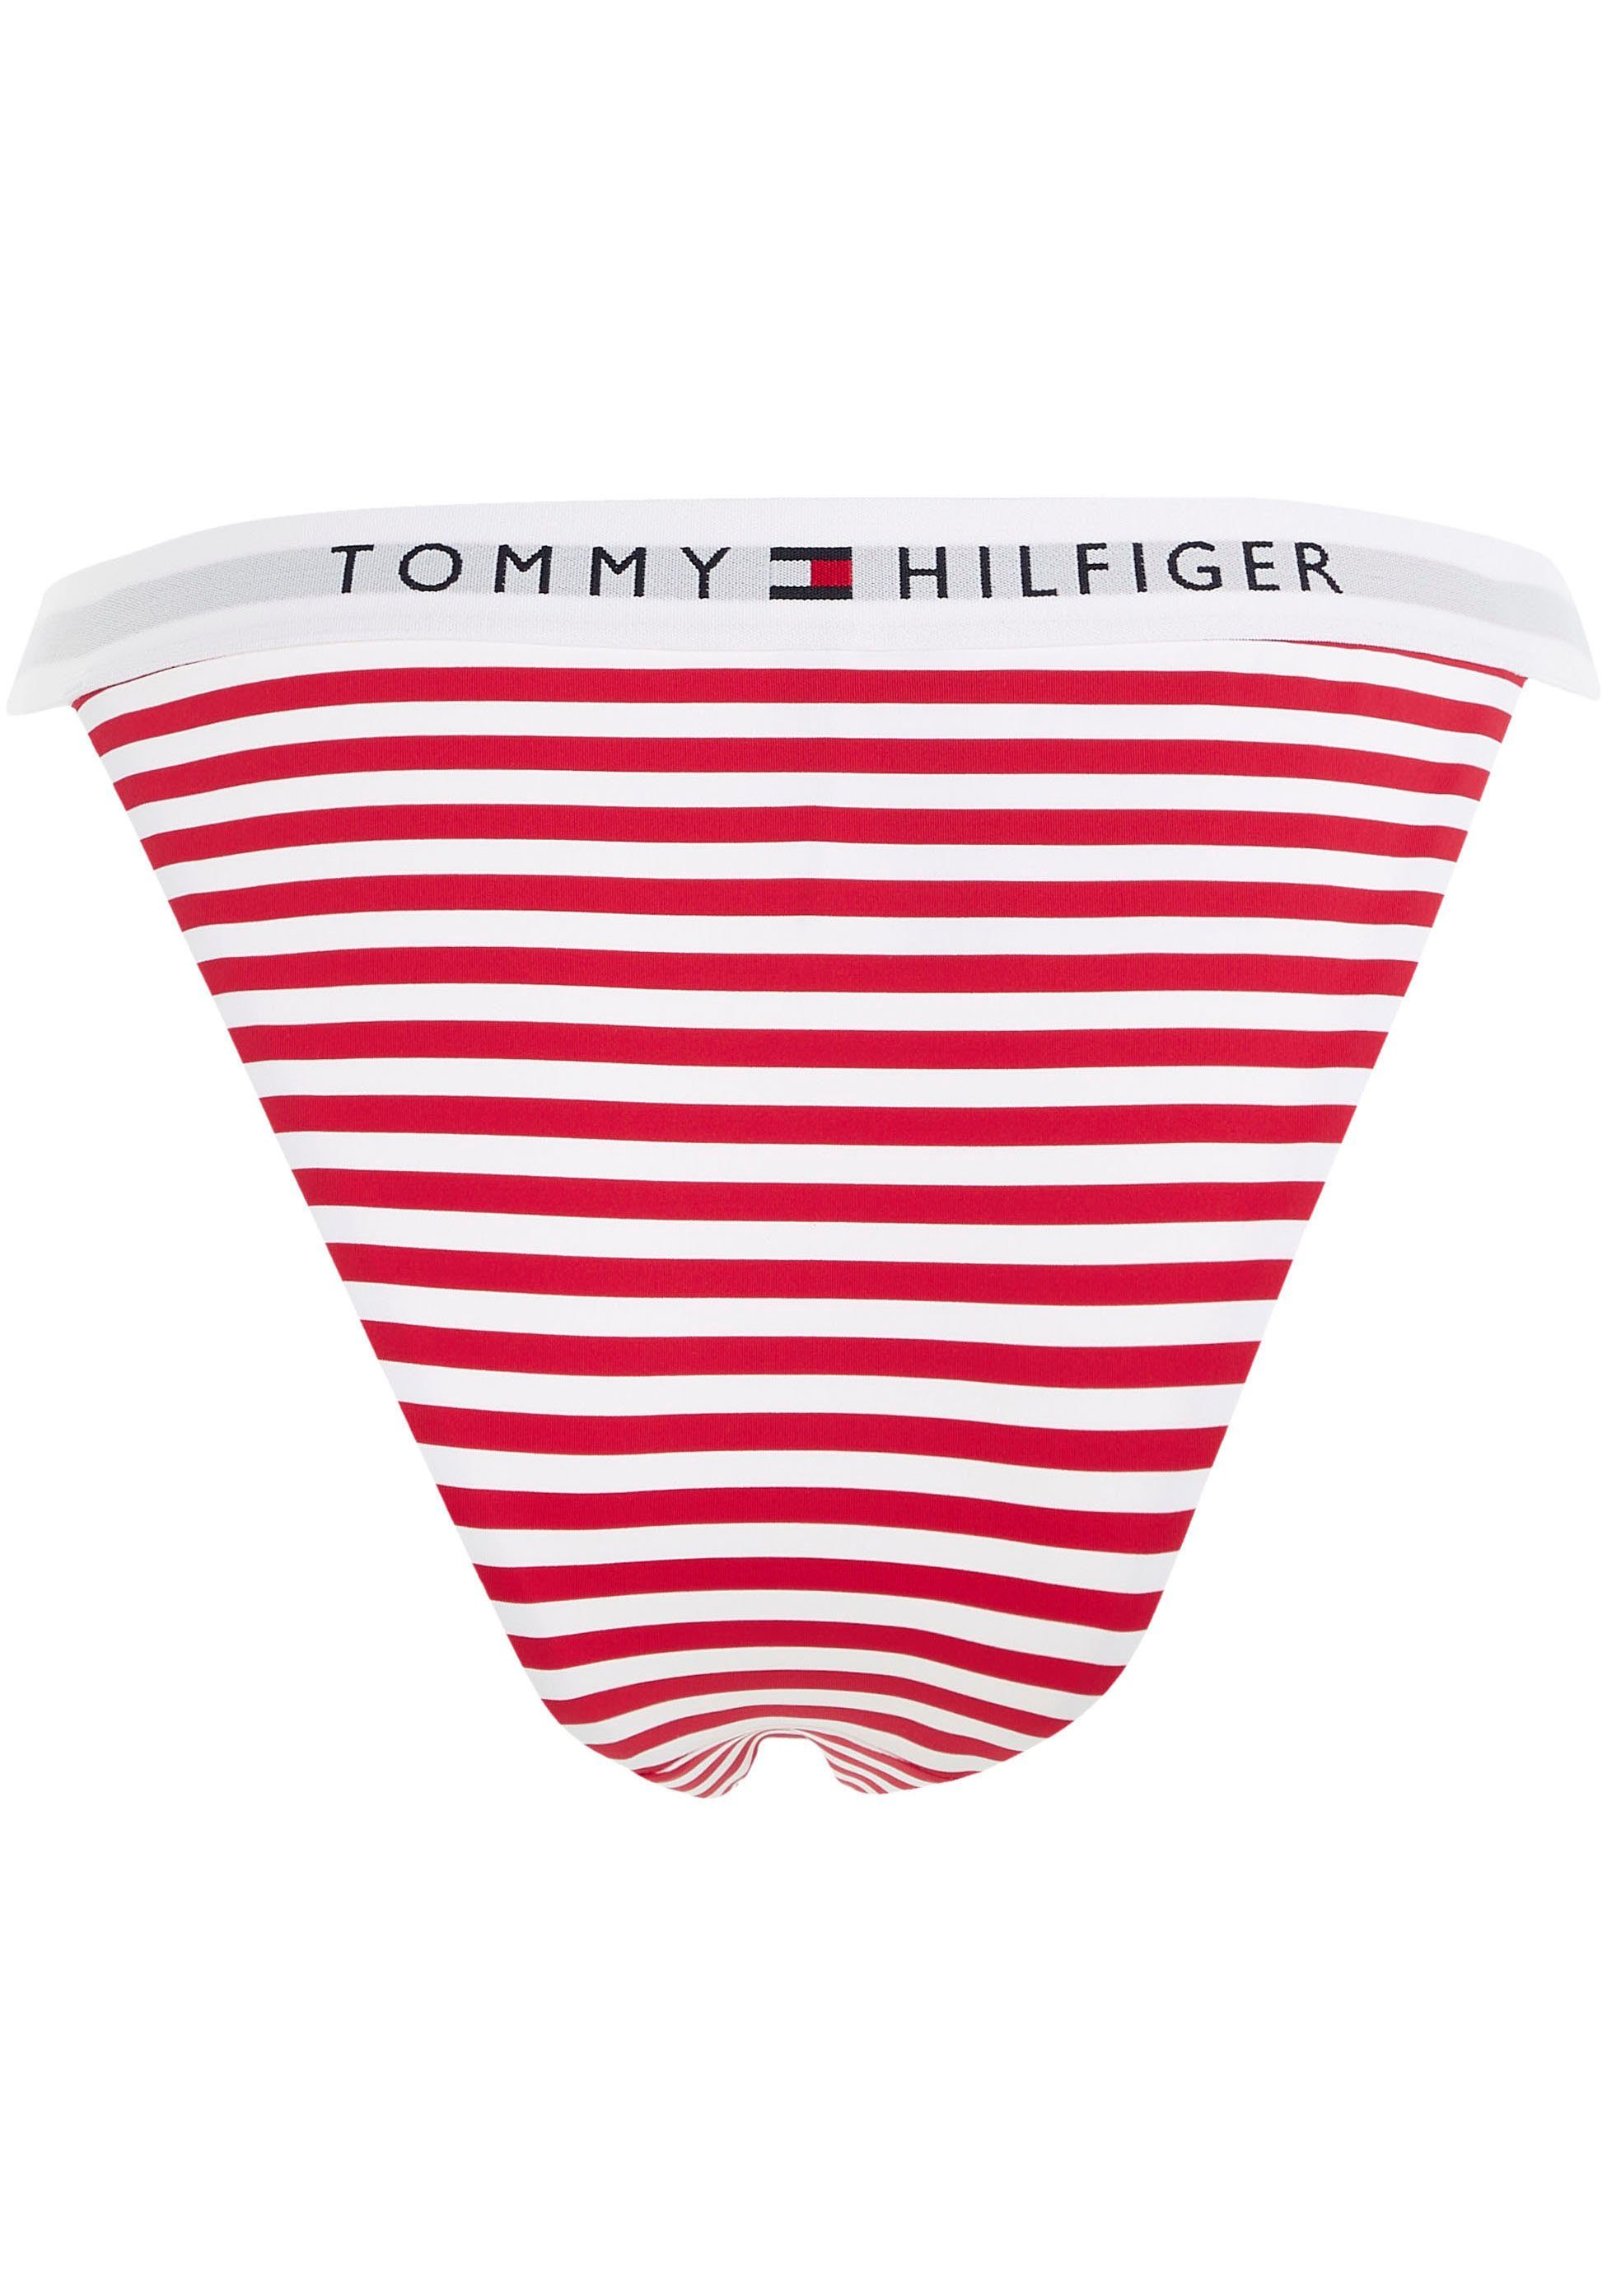 WB BIKINI Tommy PRINT Swimwear Hilfiger-Branding Hilfiger mit Bikini-Hose TH CHEEKY Tommy